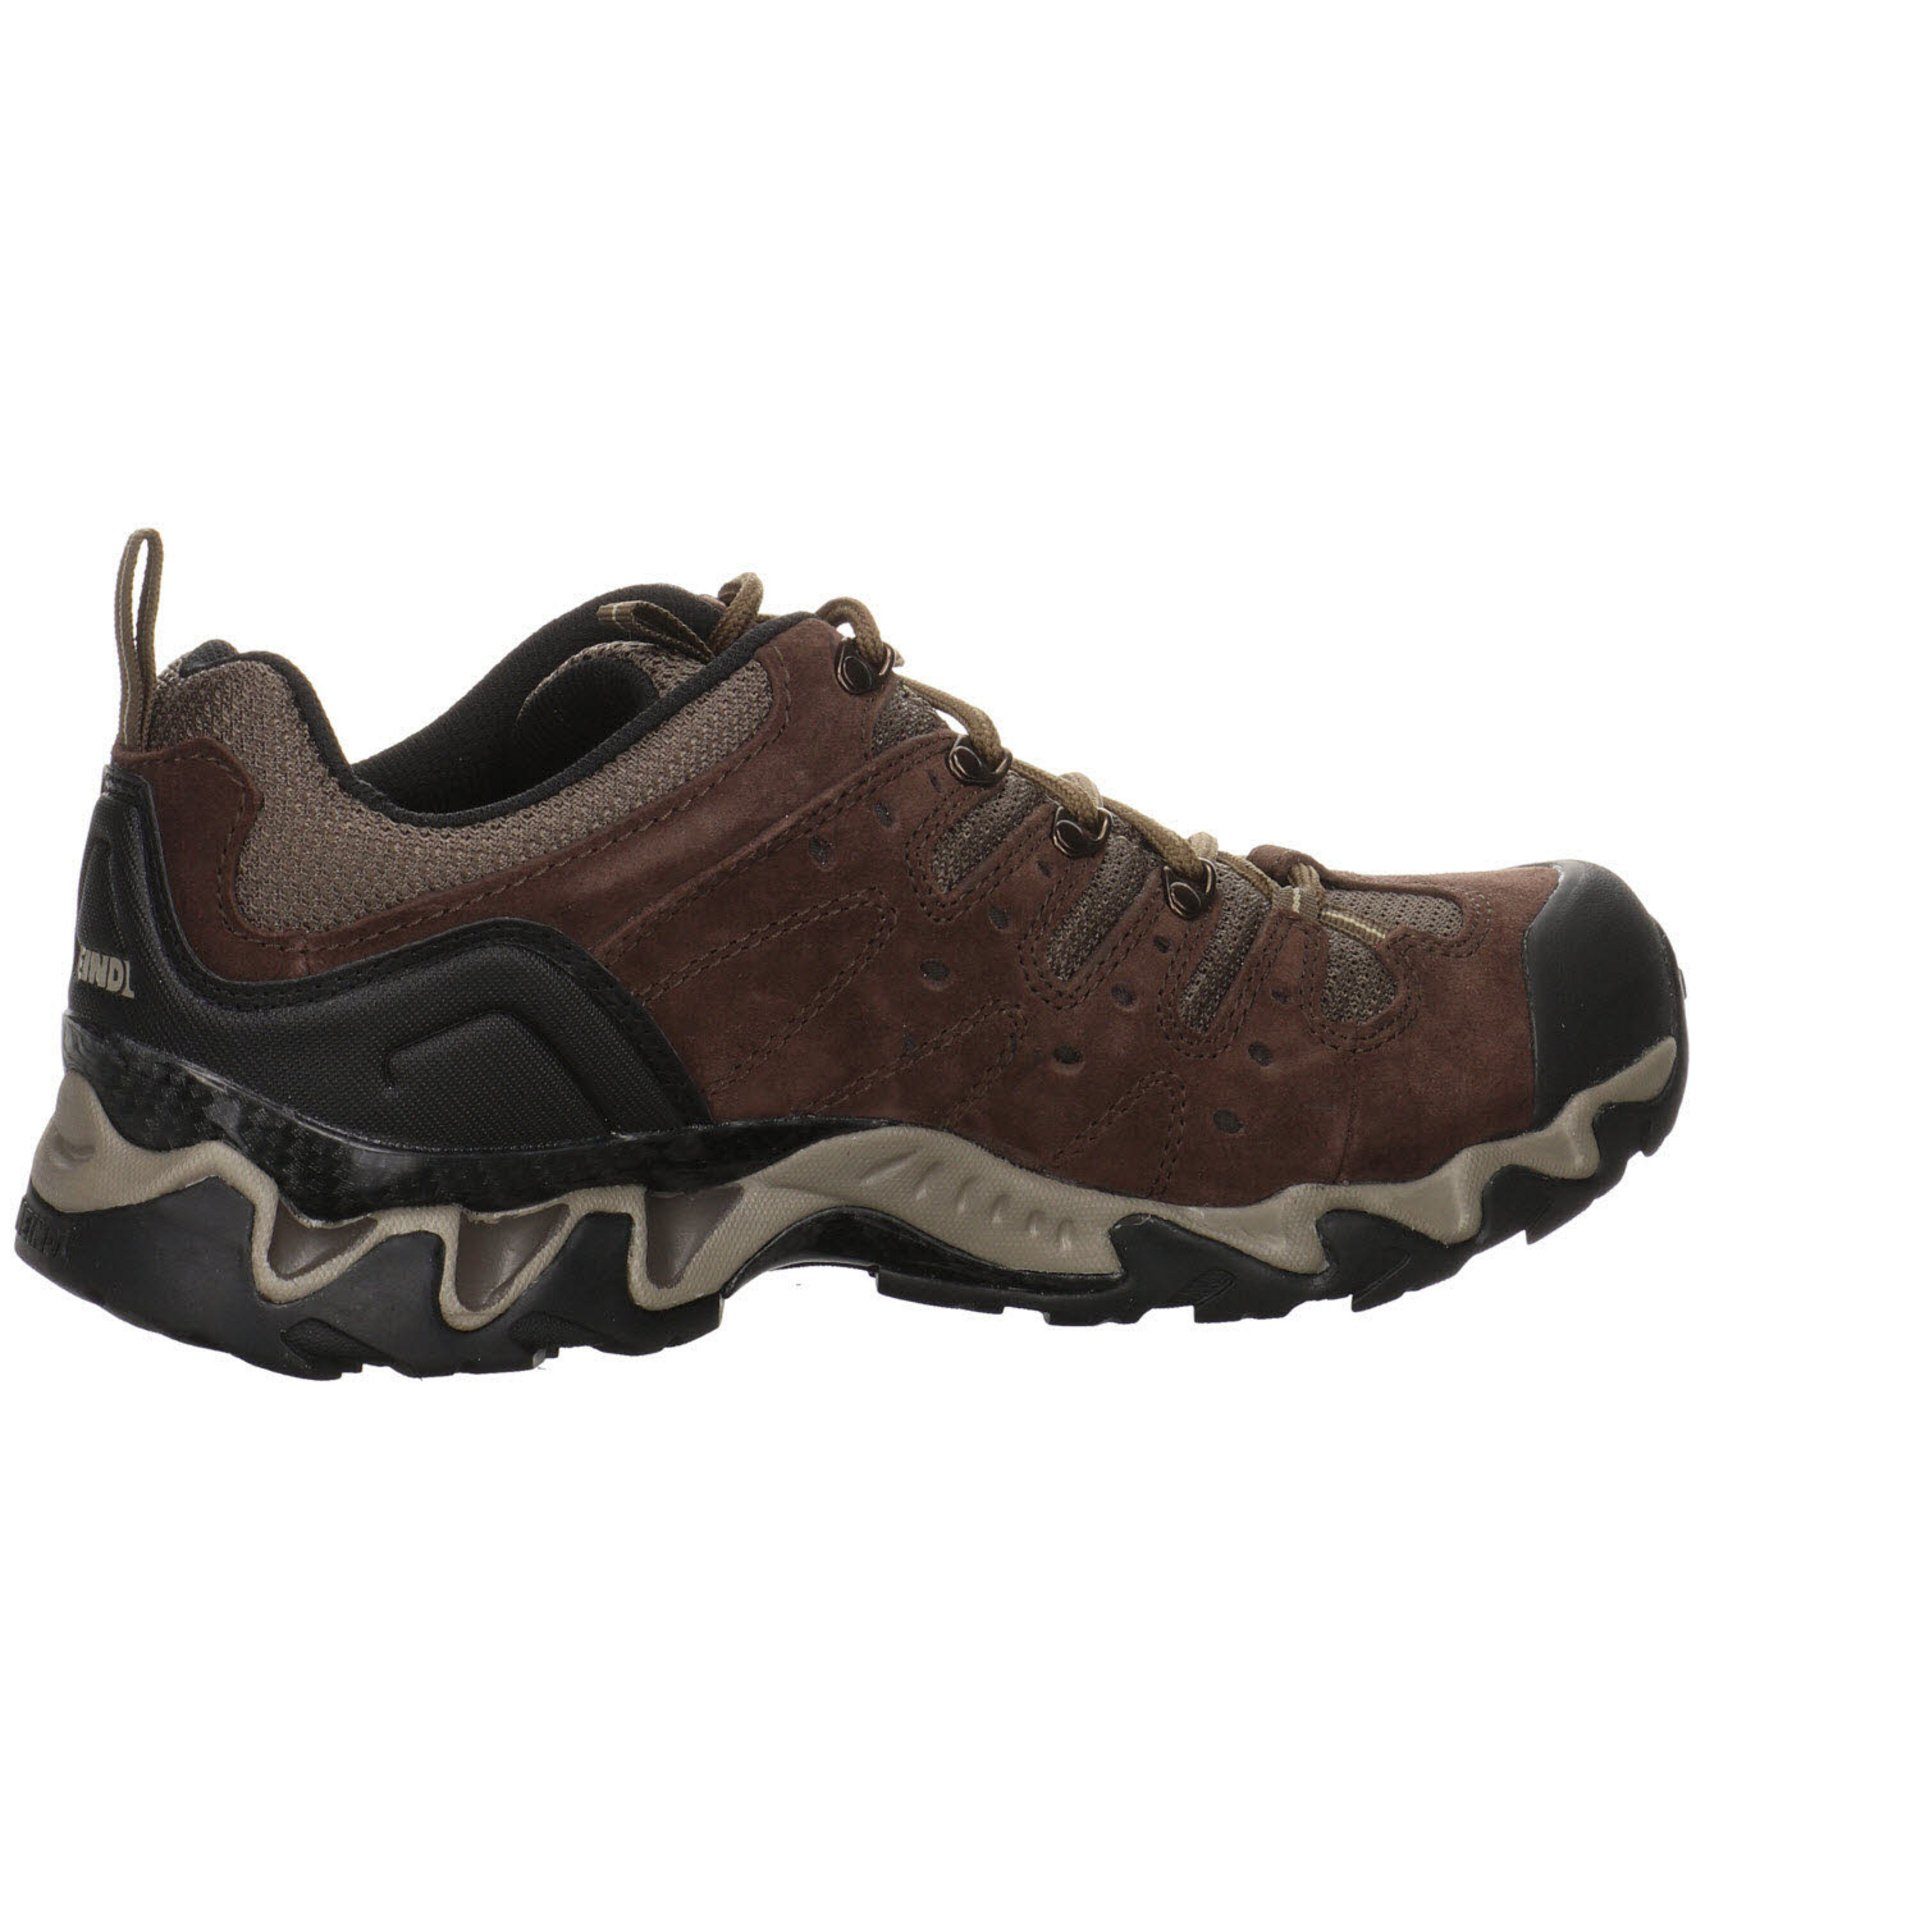 Meindl Herren dunkel Schuhe Leder-/Textilkombination braun Outdoor Outdoorschuh GTX Outdoorschuh Portland